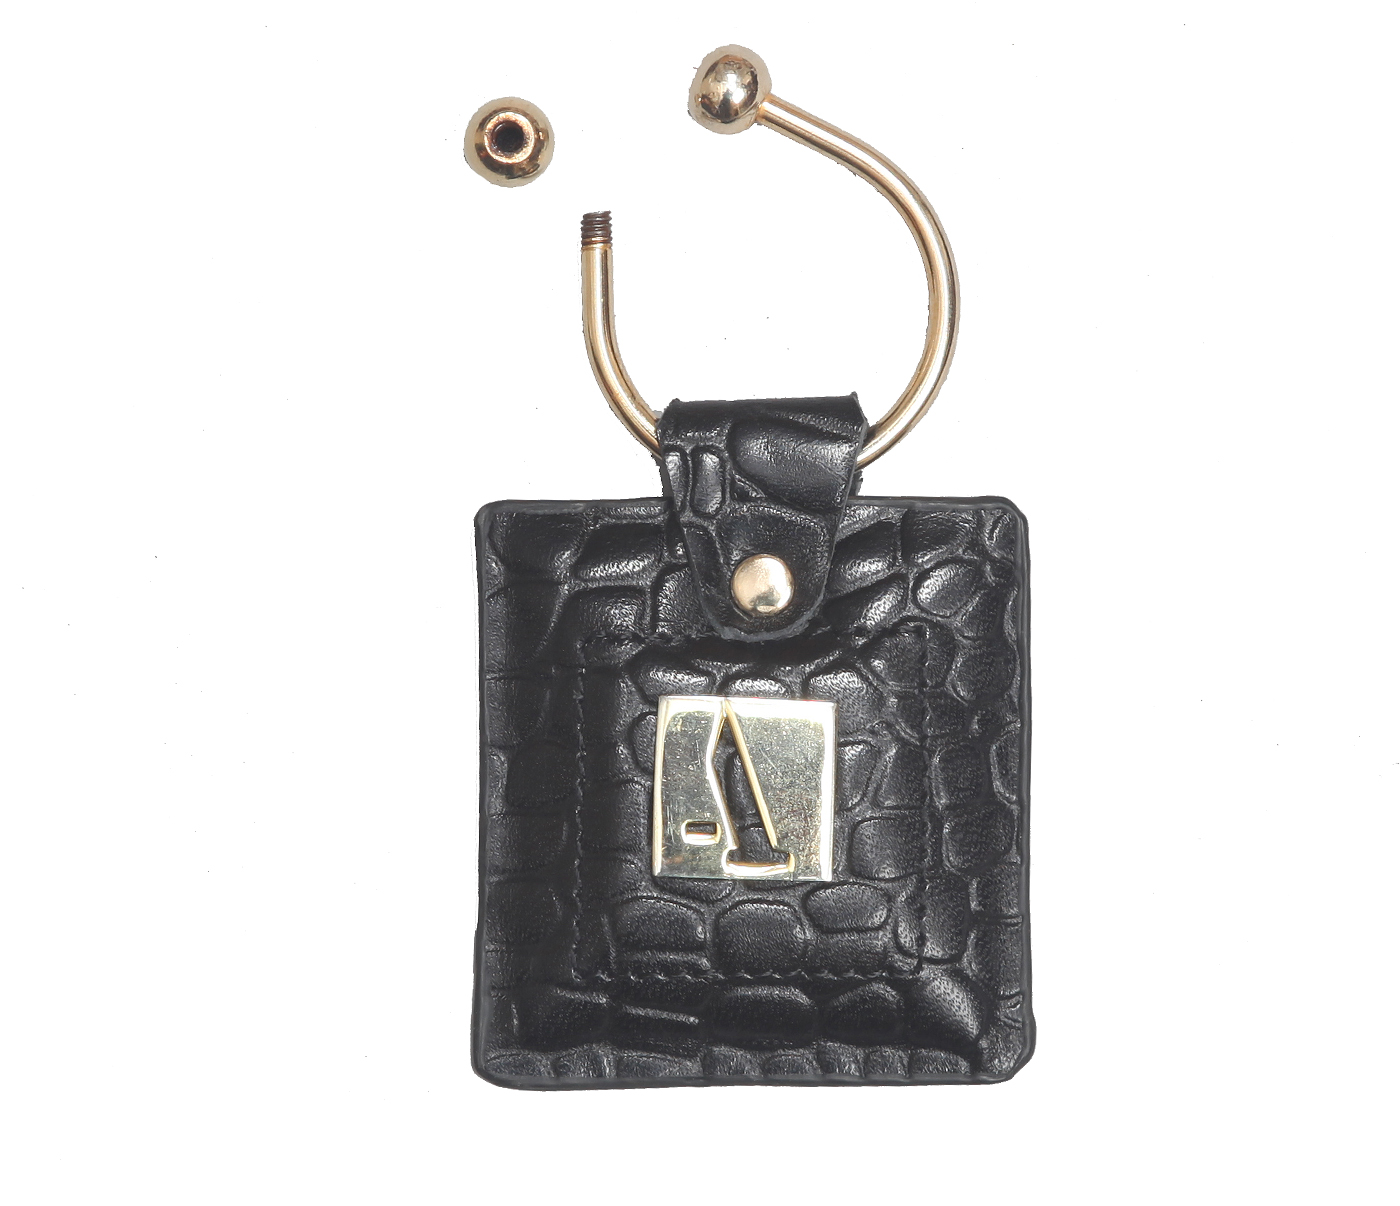 W269--Key holder with knob screw key fitting in Genuine Leather - Black